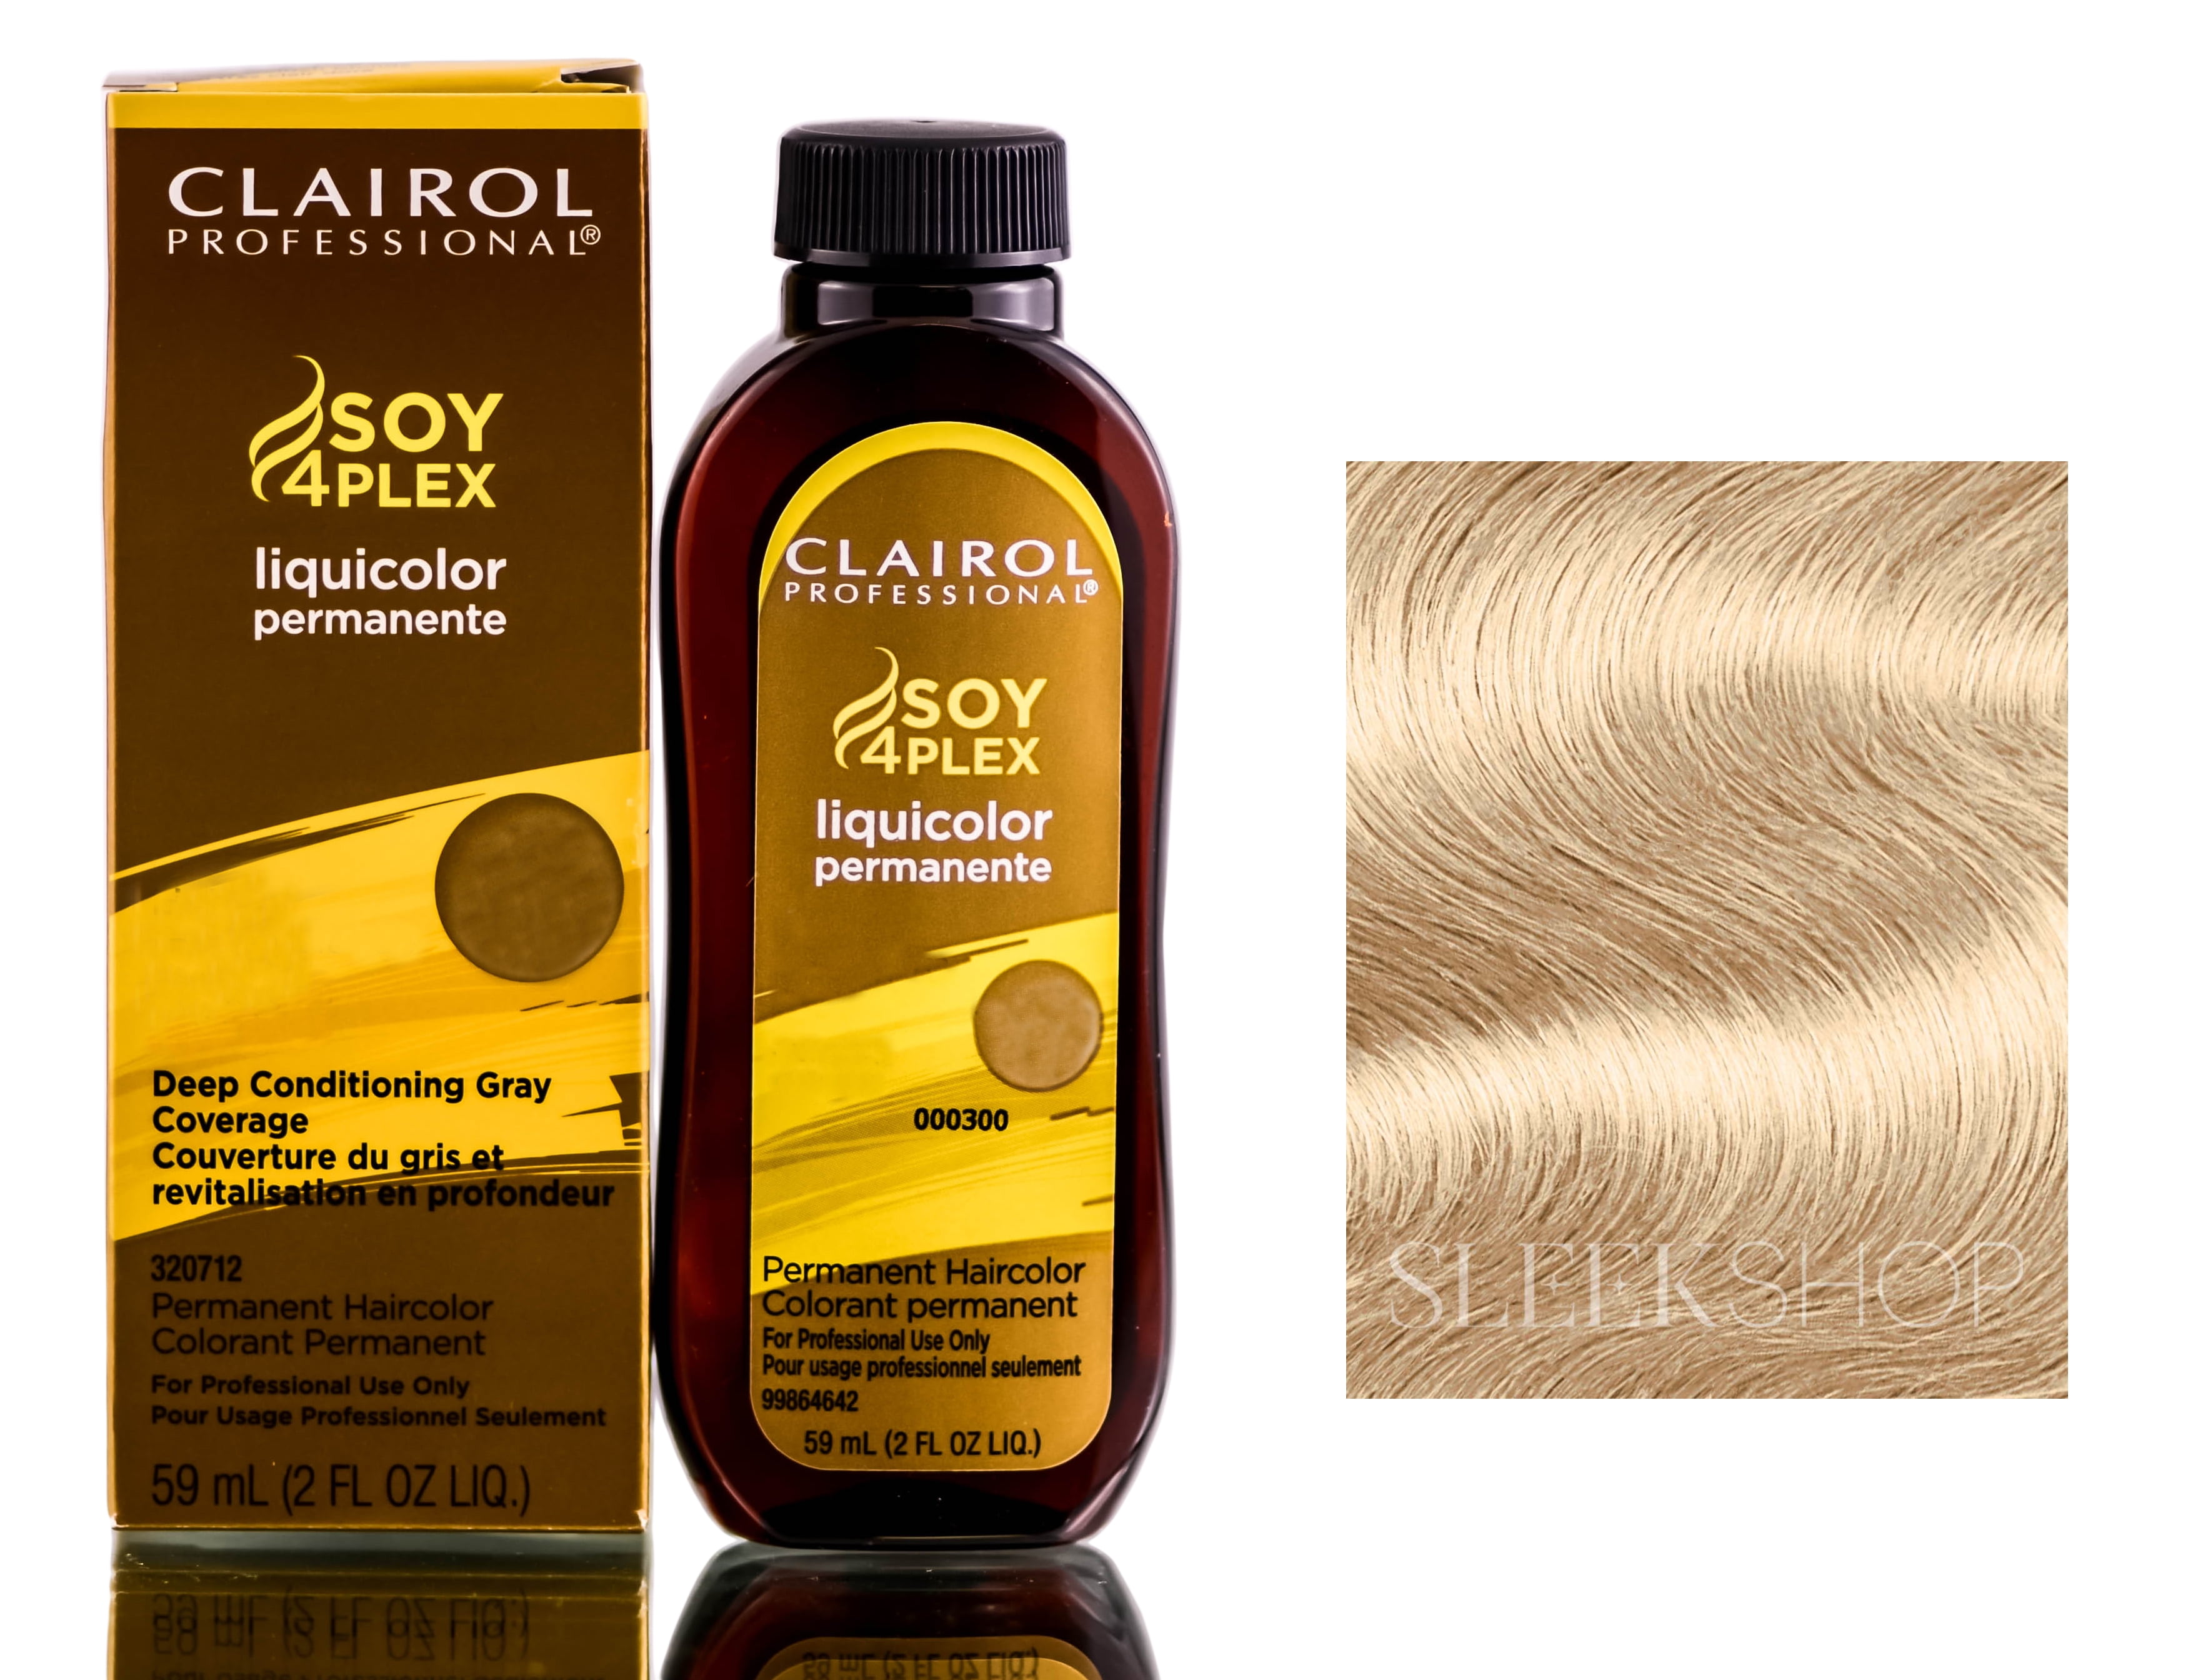 9. "Clairol Professional Soy4Plex Liquicolor Permanent Hair Color, 9AA Lightest Ash Blonde" - wide 5